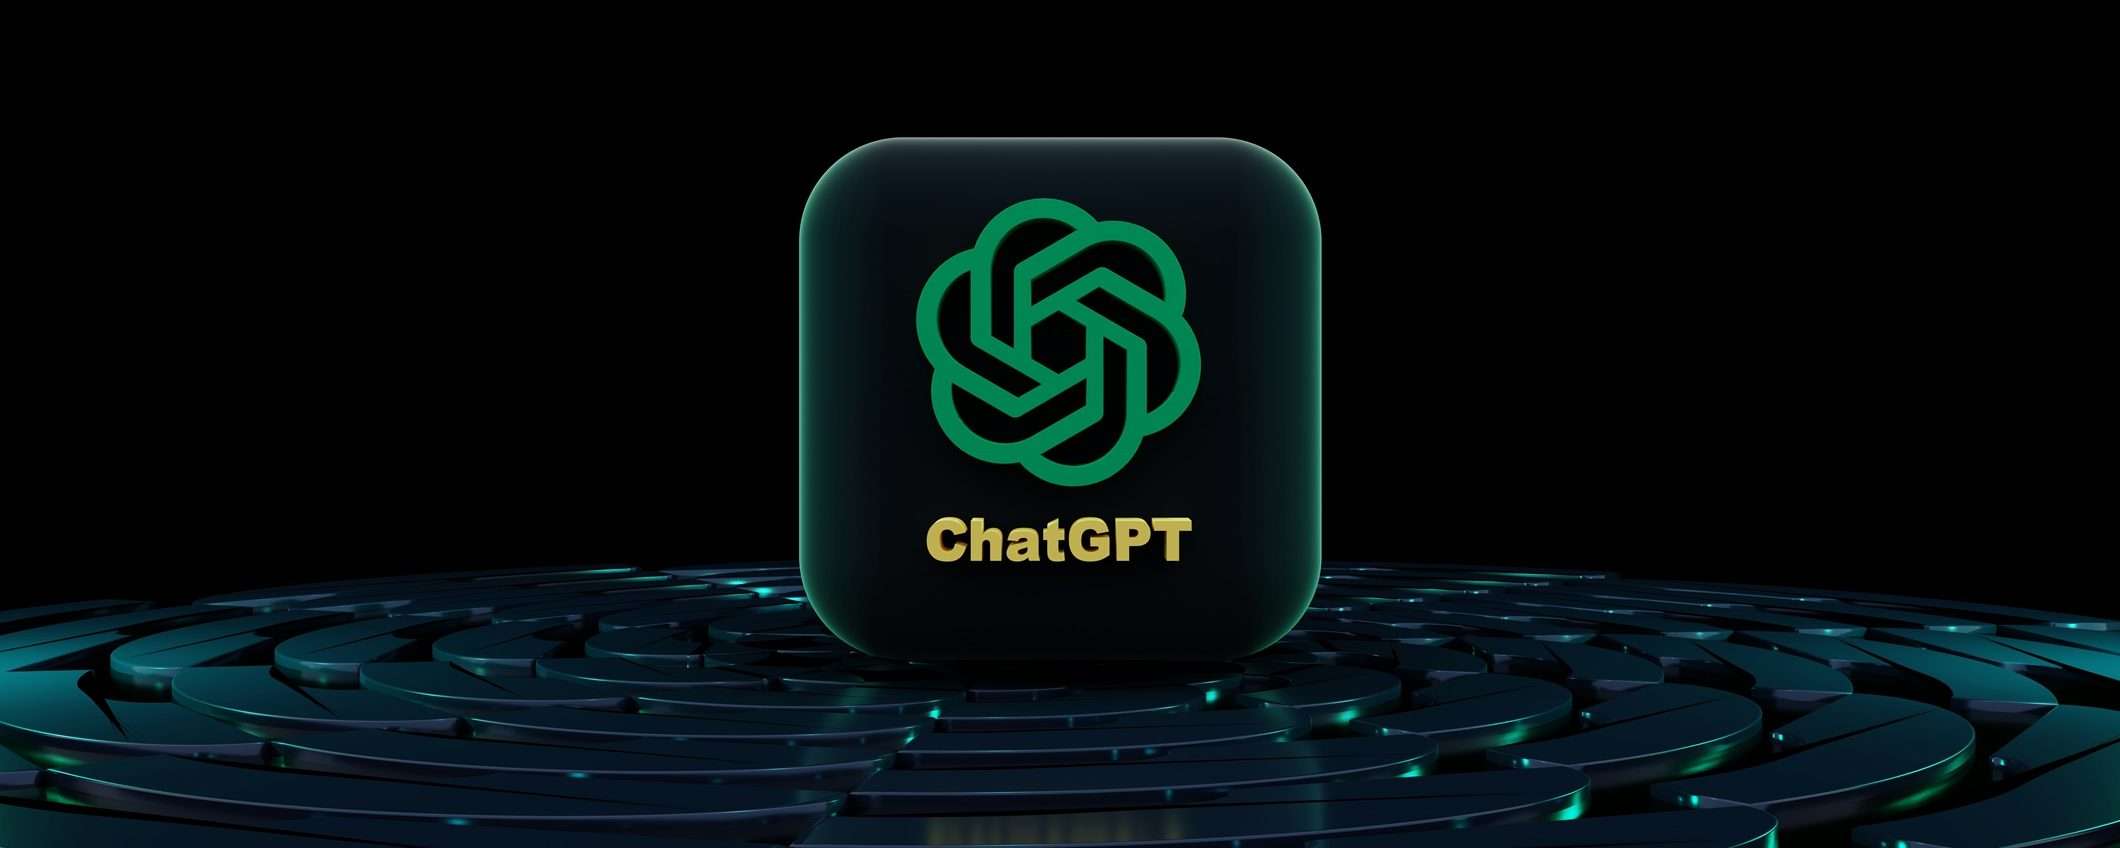 In arrivo il widget ChatGPT per gli smartphone Android